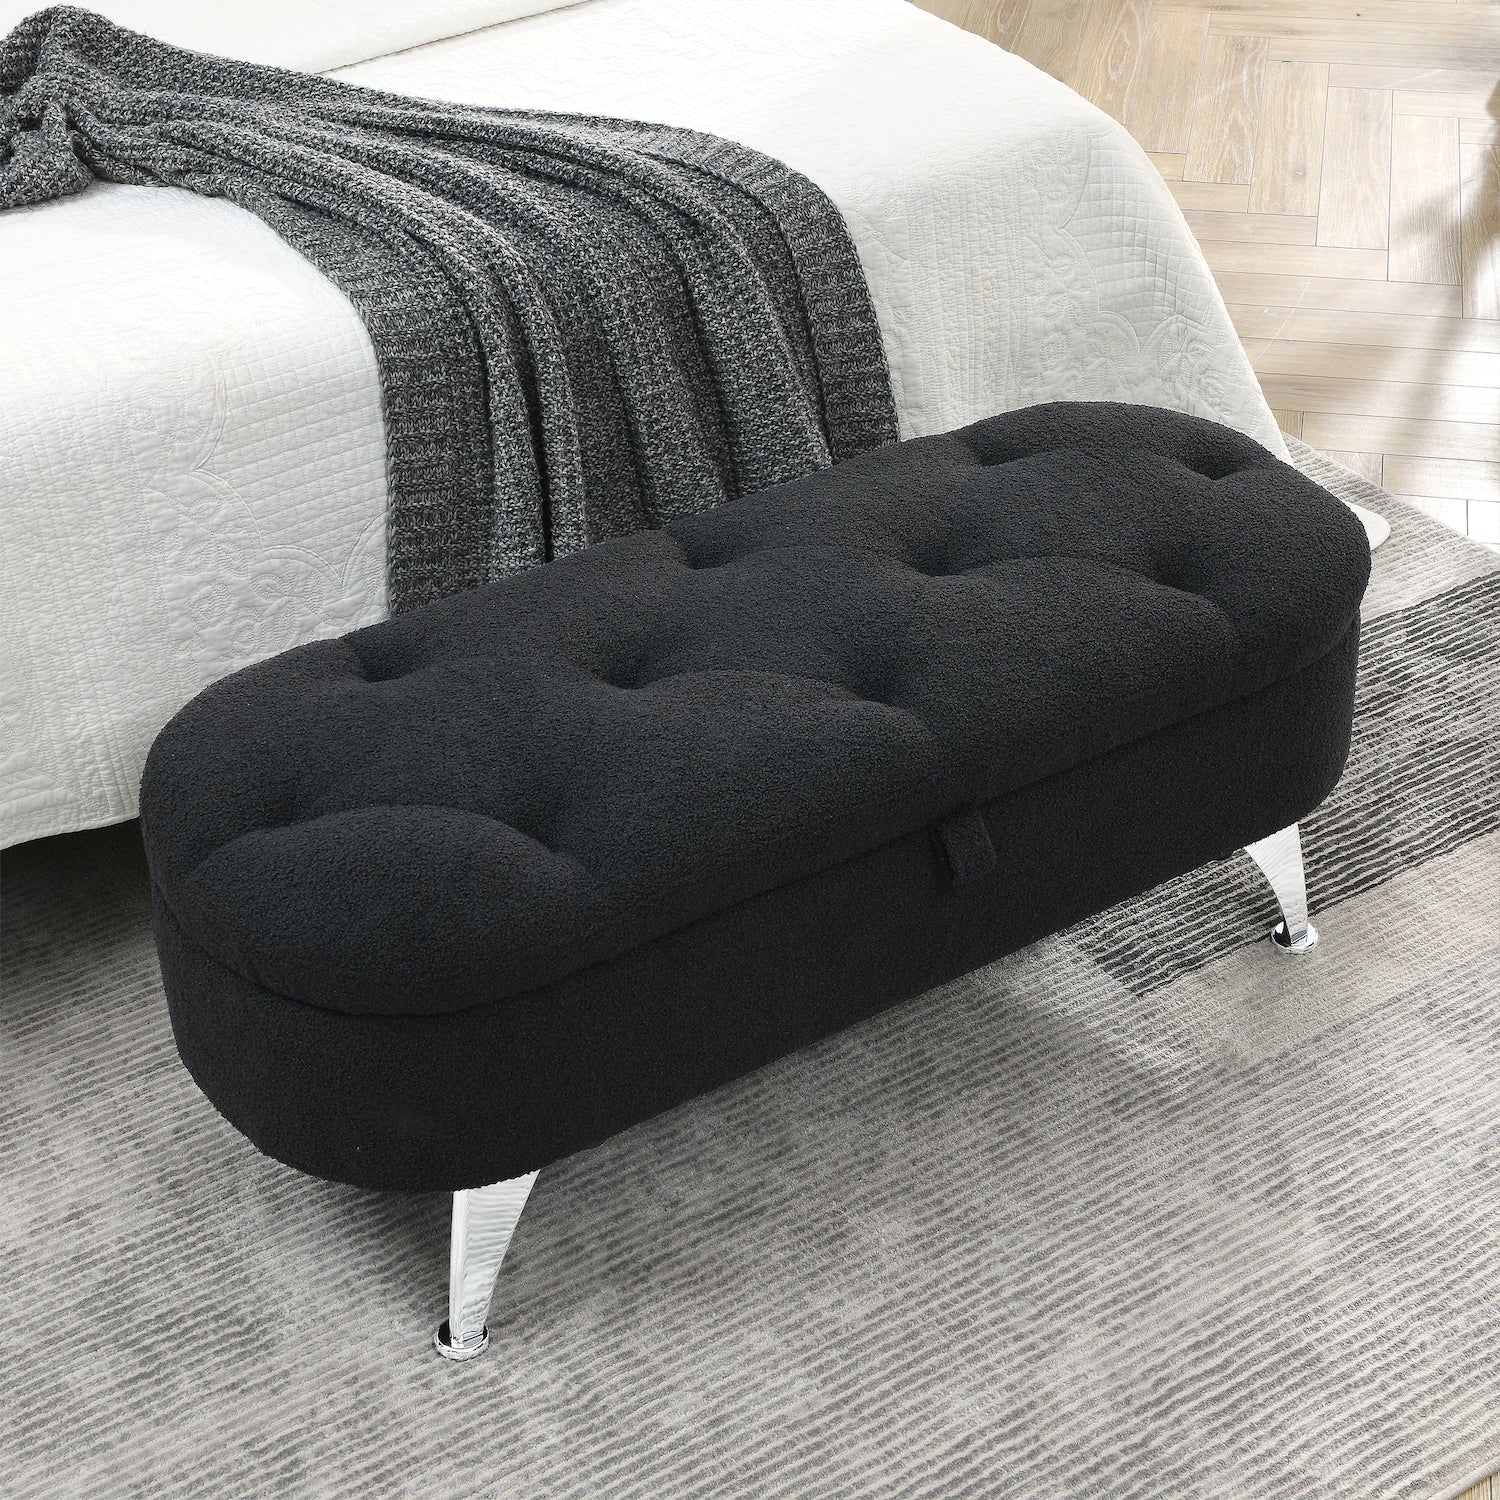 Welike 45" Teddy Fabric Upholstered Bedroom Bench - Black